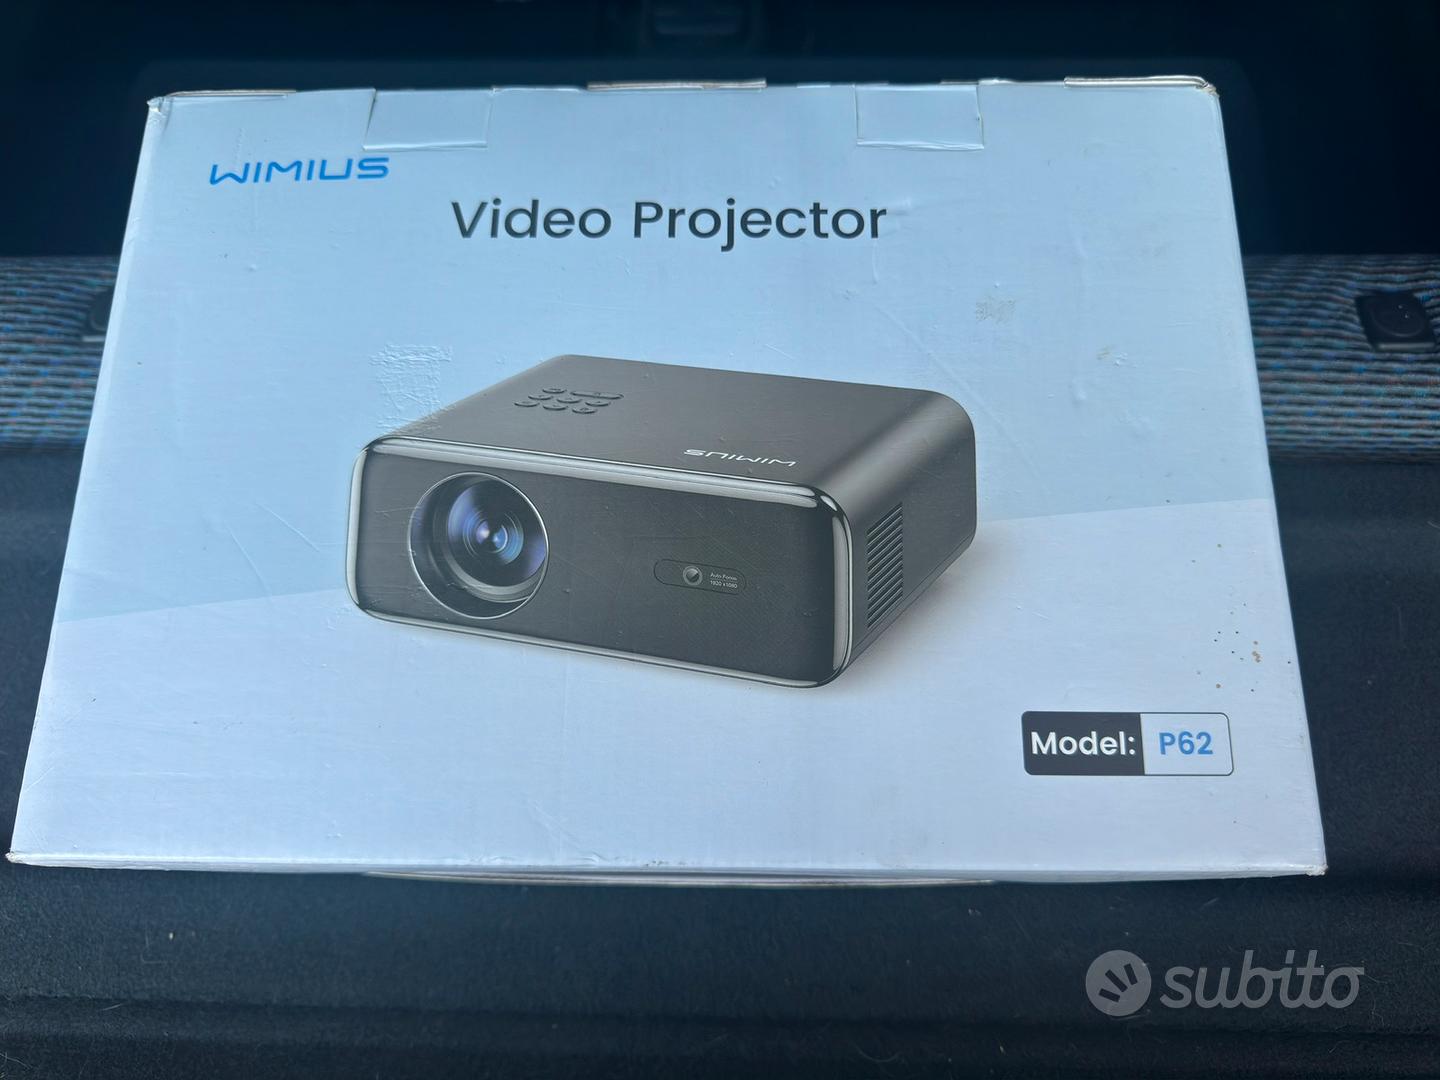 Videoproiettore WIMIUS P62 nuovo ancora imballato - Audio/Video In